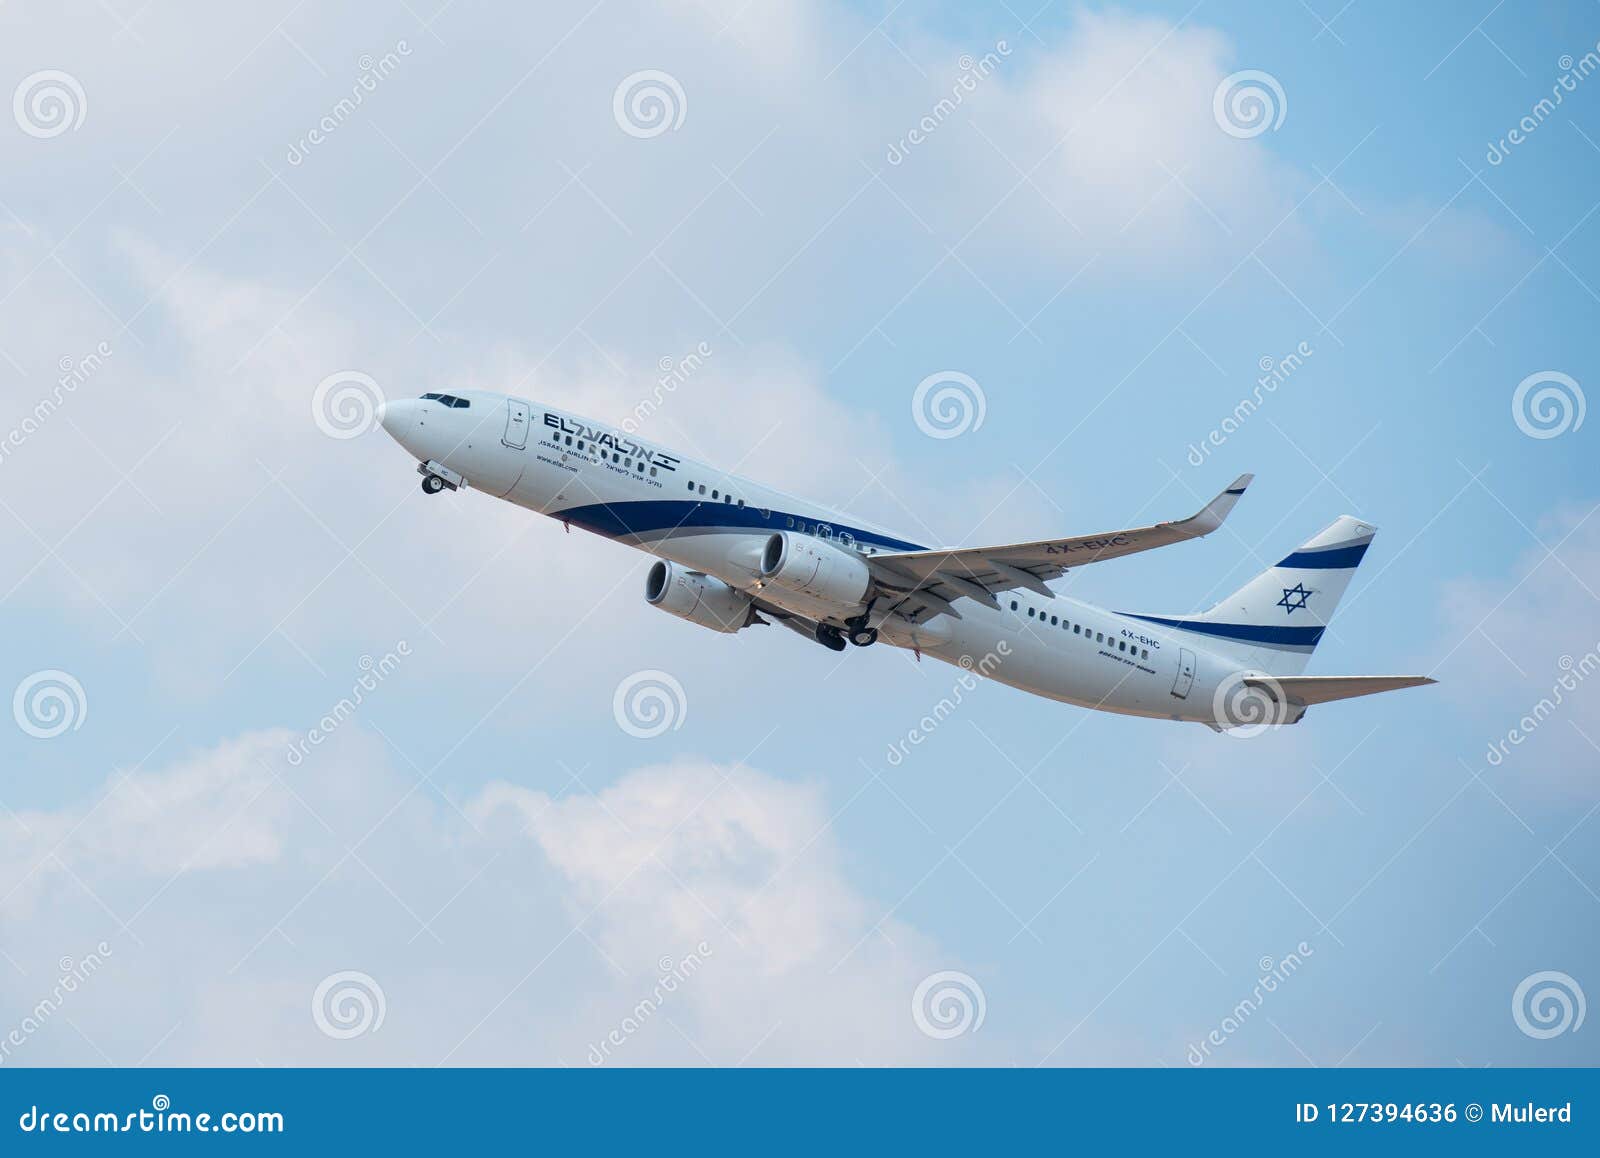 Avion De Pasajeros De El Al En Cielo Azul Despues De Sacar De Ben Gurion Airport Bon Voyage Foto Editorial Imagen De Azul Avion